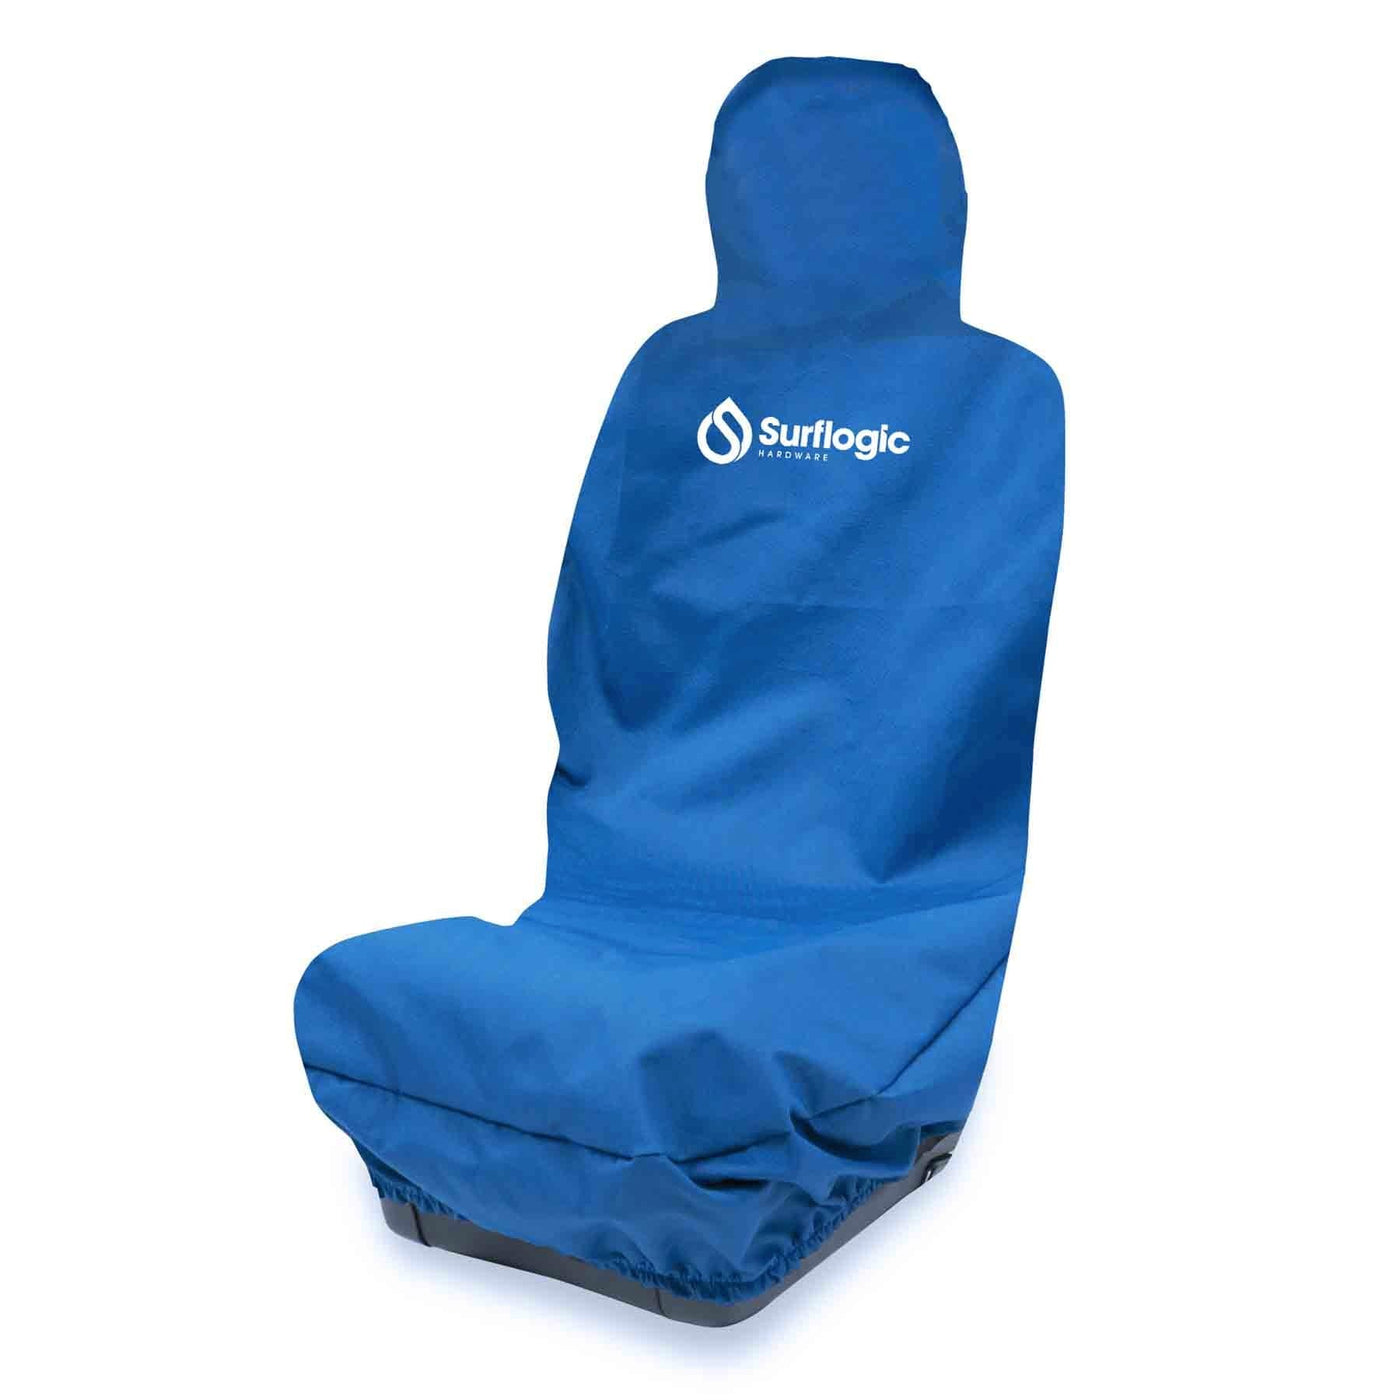 Surflogic Waterproof Car Seat Cover (Navy) Surflogic